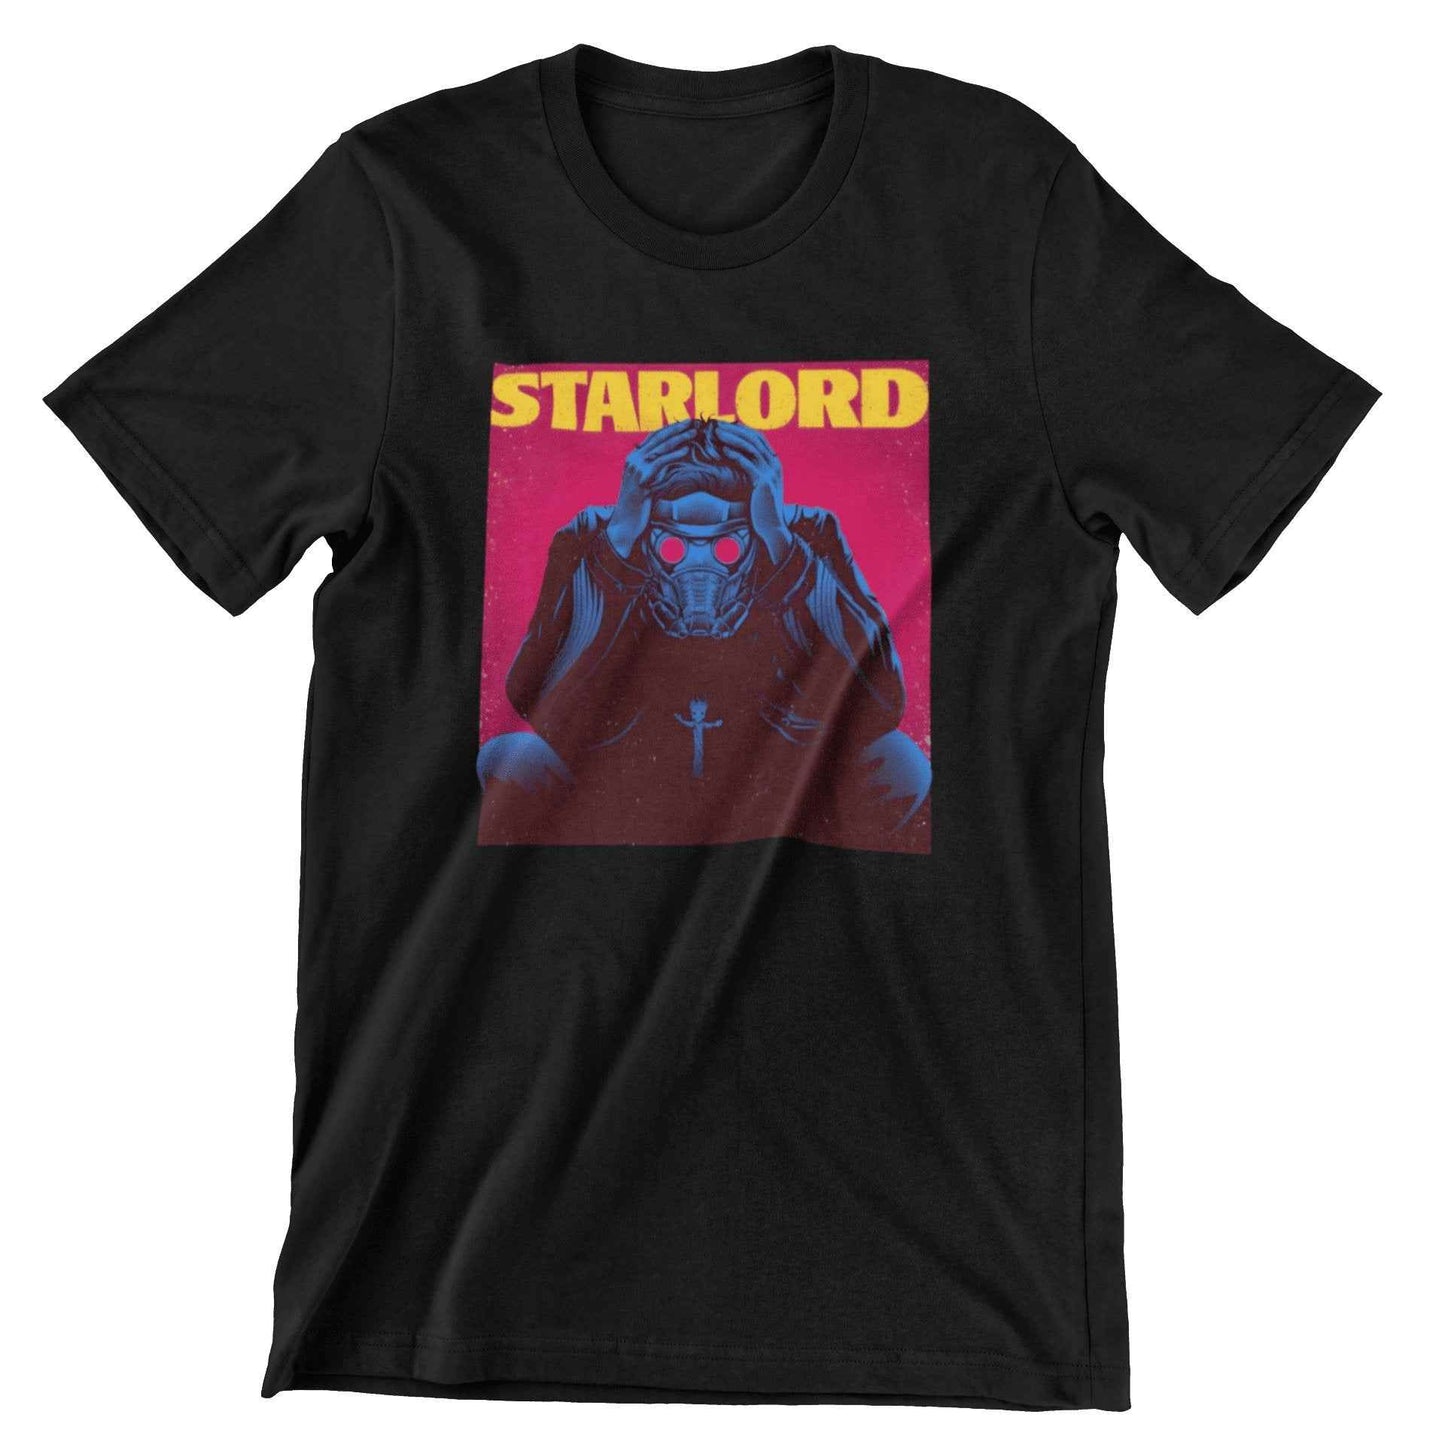 Weekend Star Lord, Es un producto de ropa que es ideal para los fanáticos que deseen mostrar su amor de manera divertida y original.